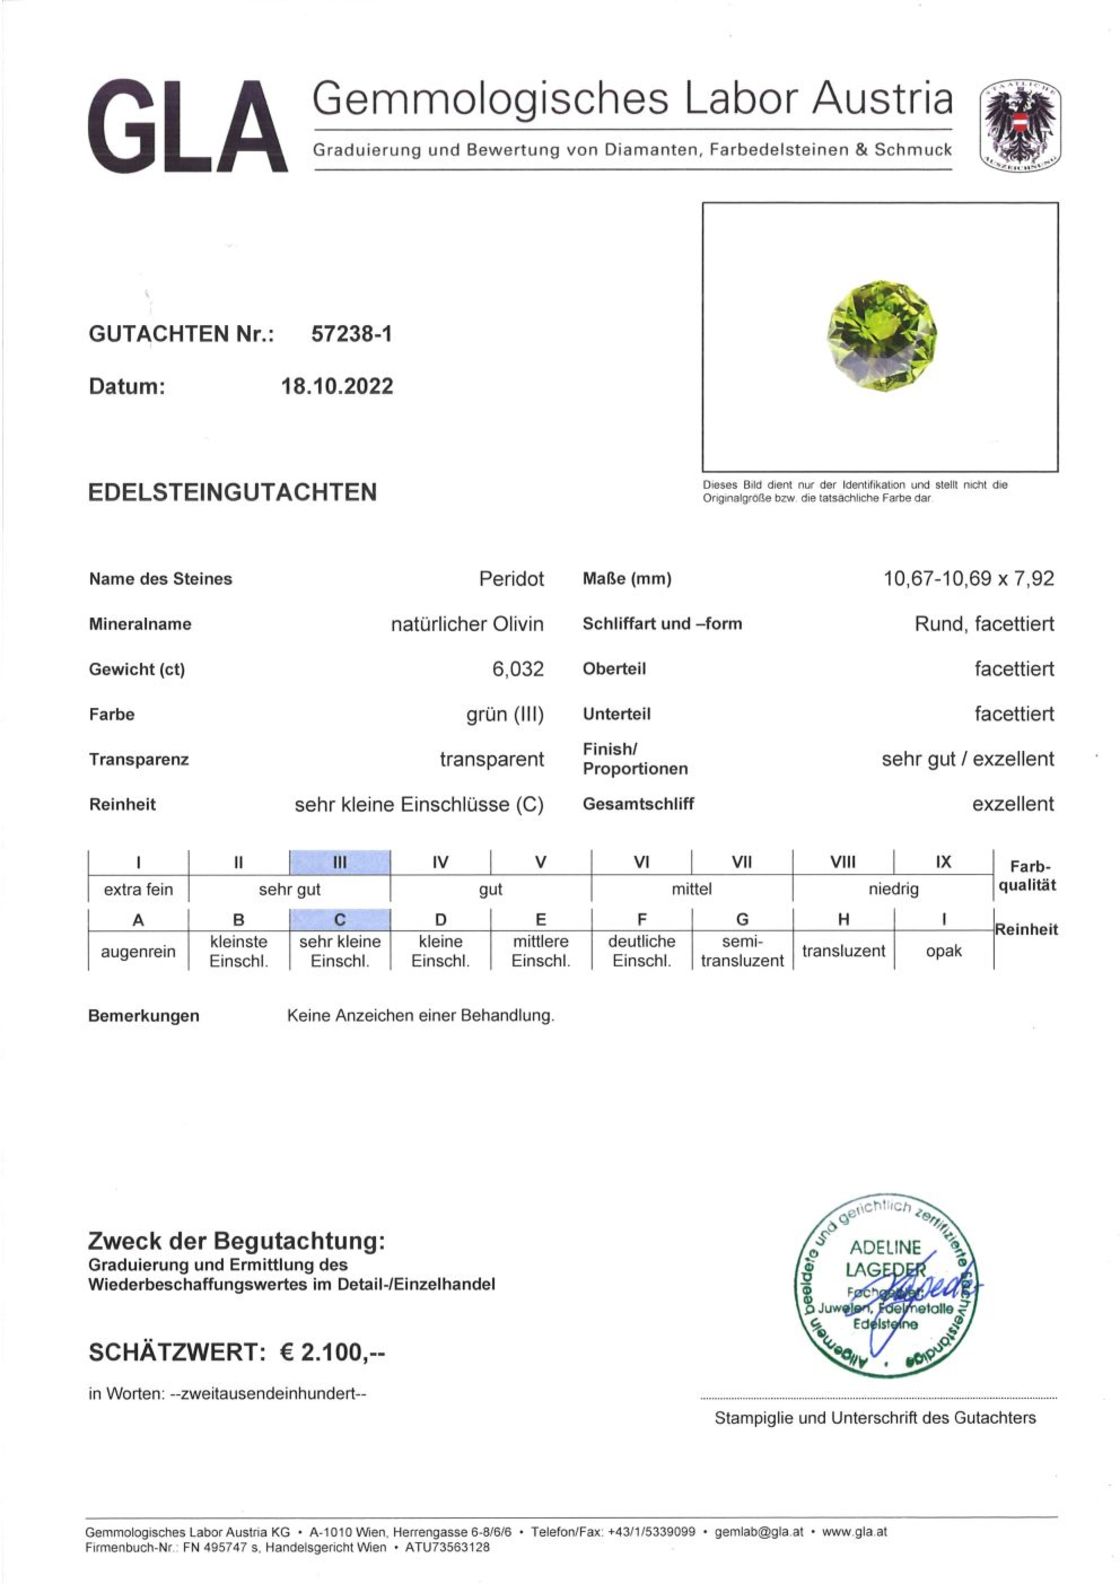 Peridot Design-Rundschliff grün unbehandelt 6,032 ct